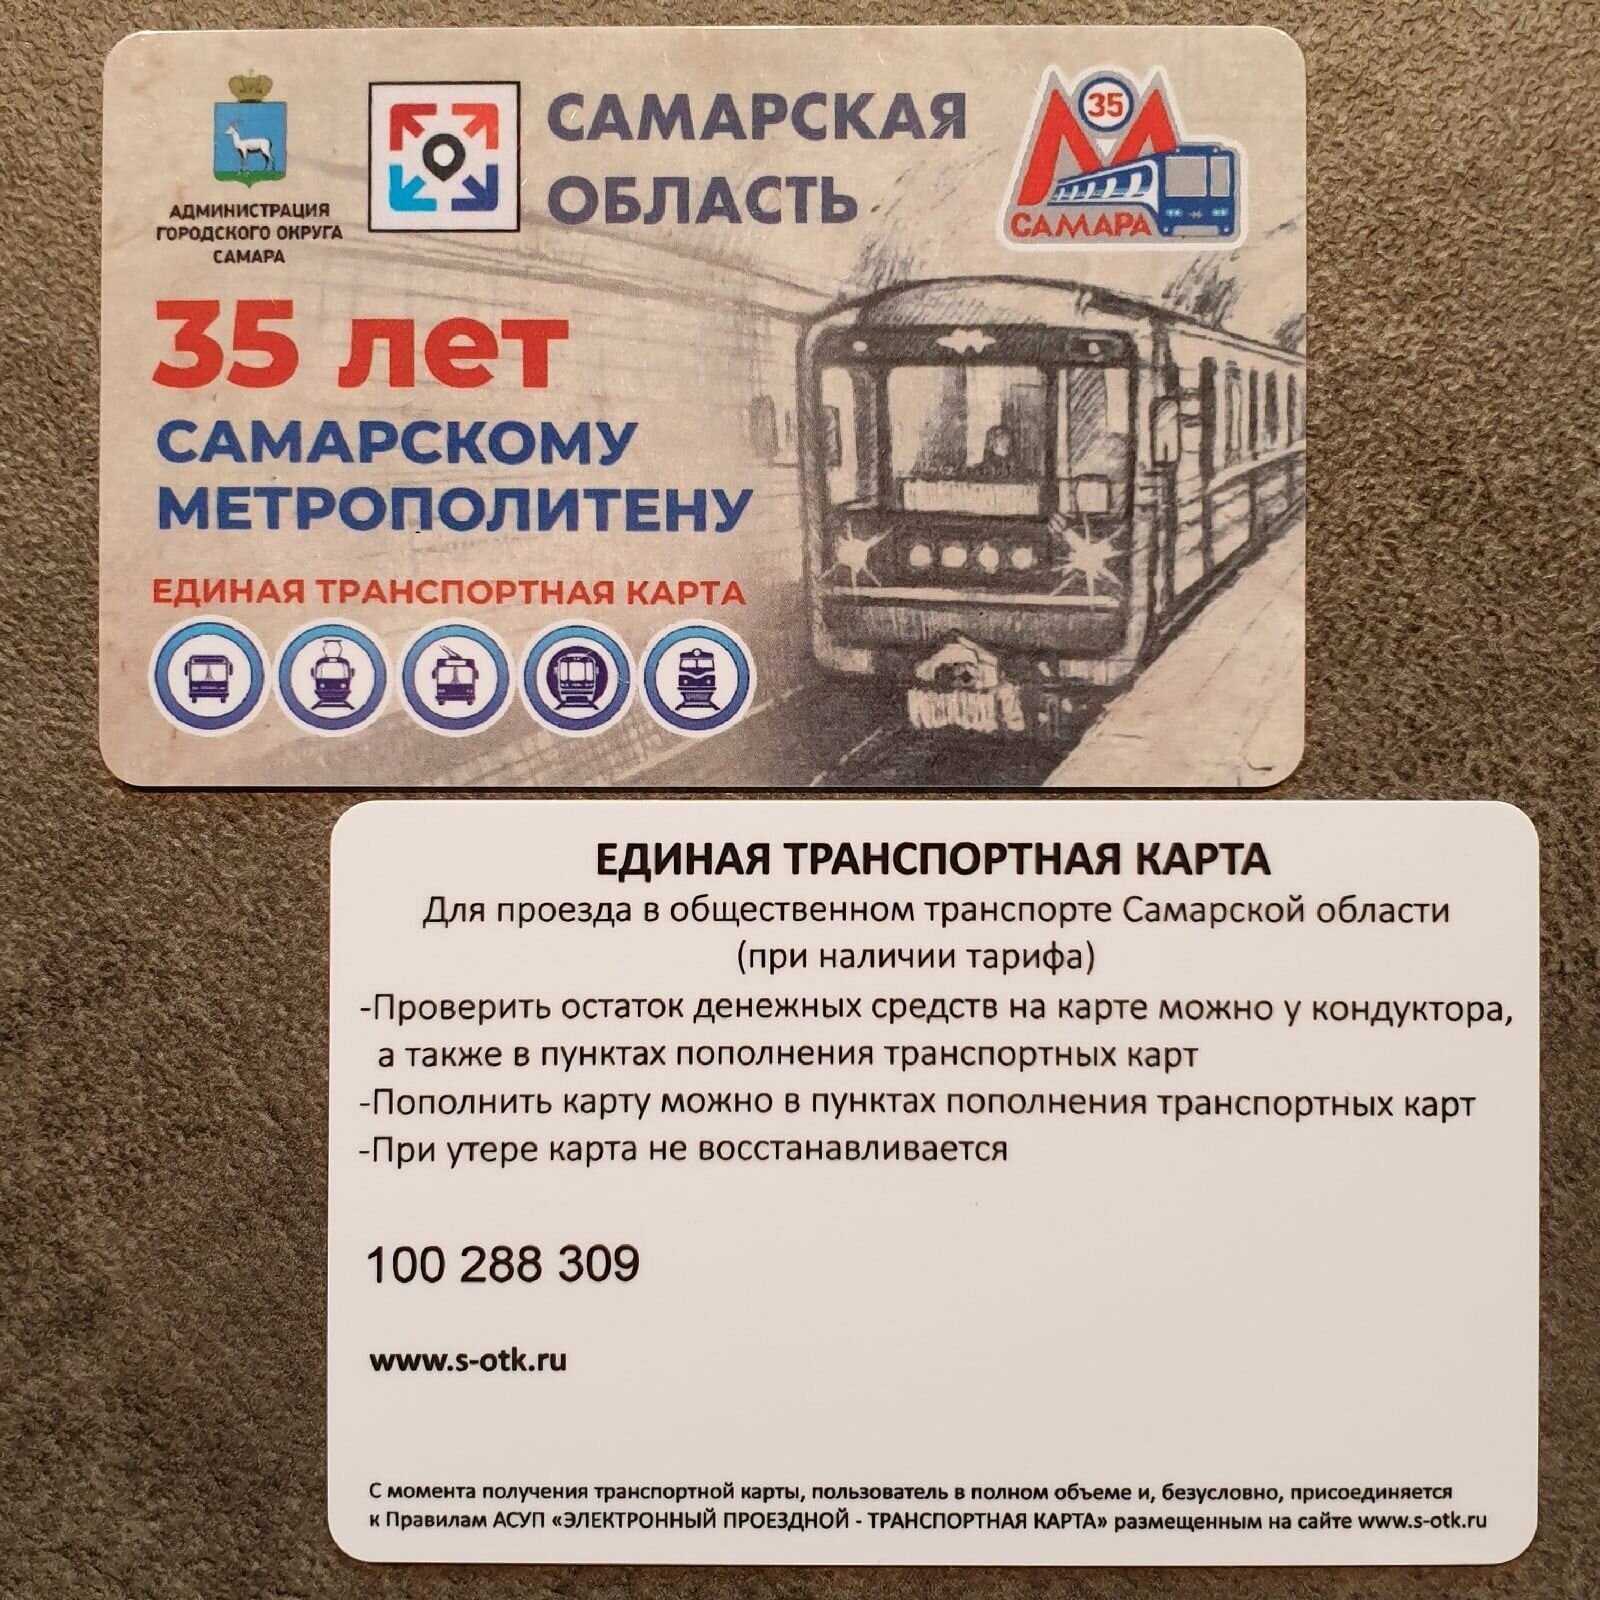 Транспортная карта метро и наземного транспорта Самарской области (Самара) - 35 лет метрополитену. Лимитированный эксклюзивный дизайн